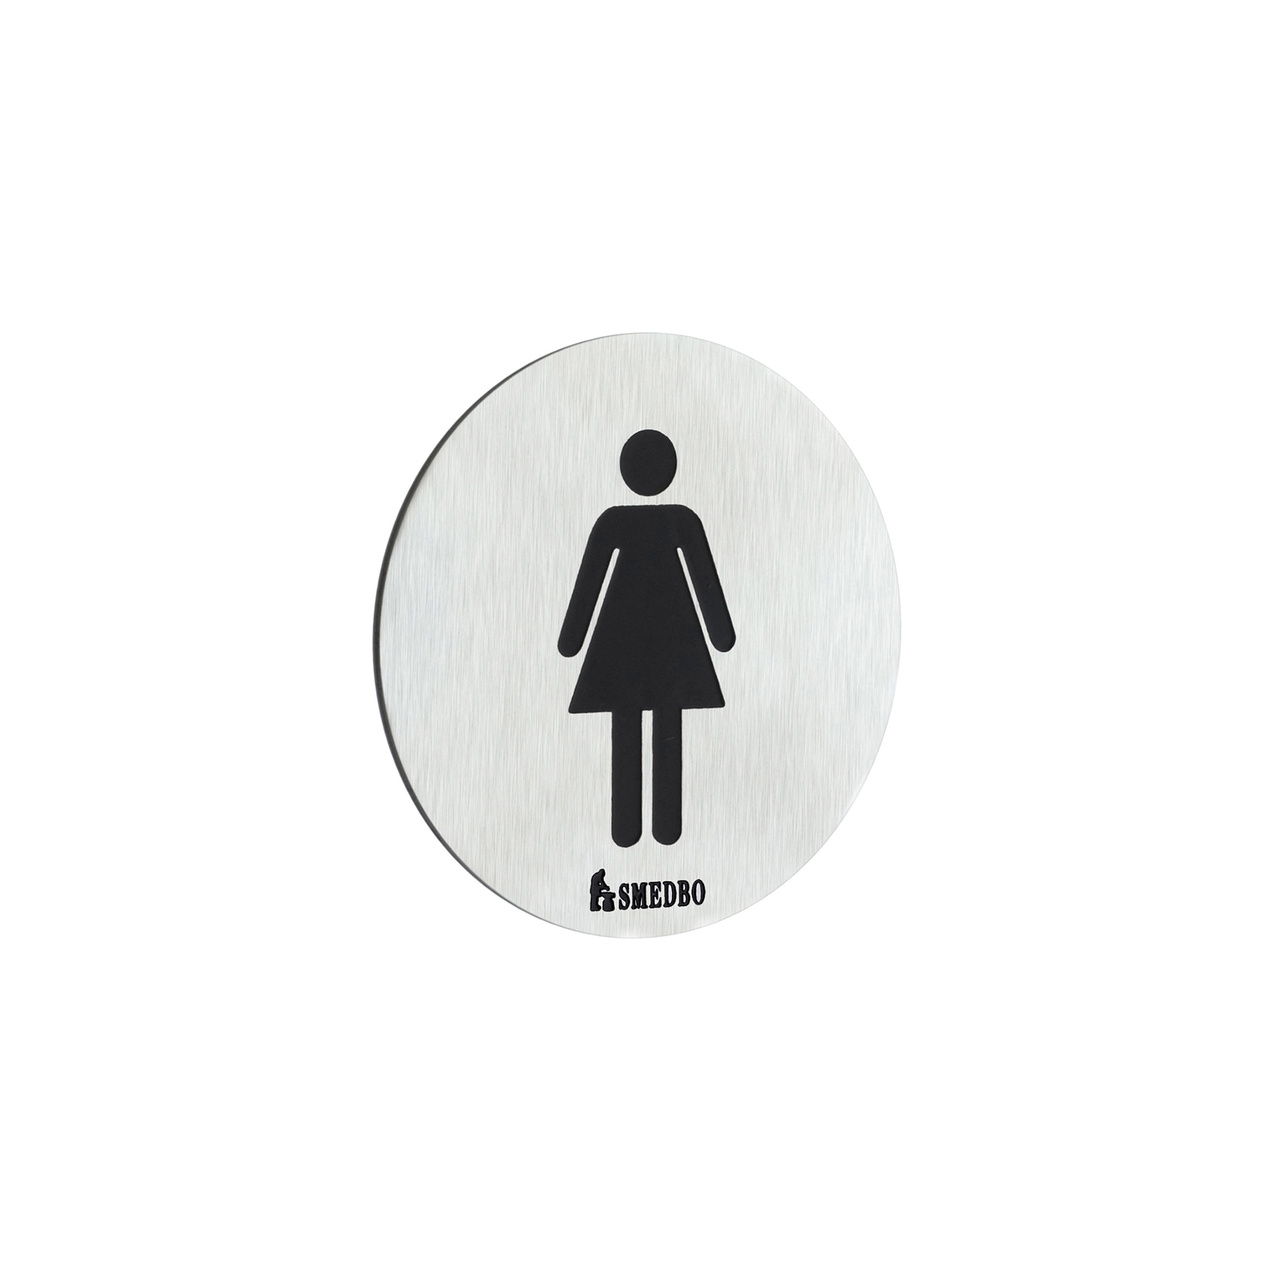 Toilet sign Ladies Smedbo, Brushed Steel